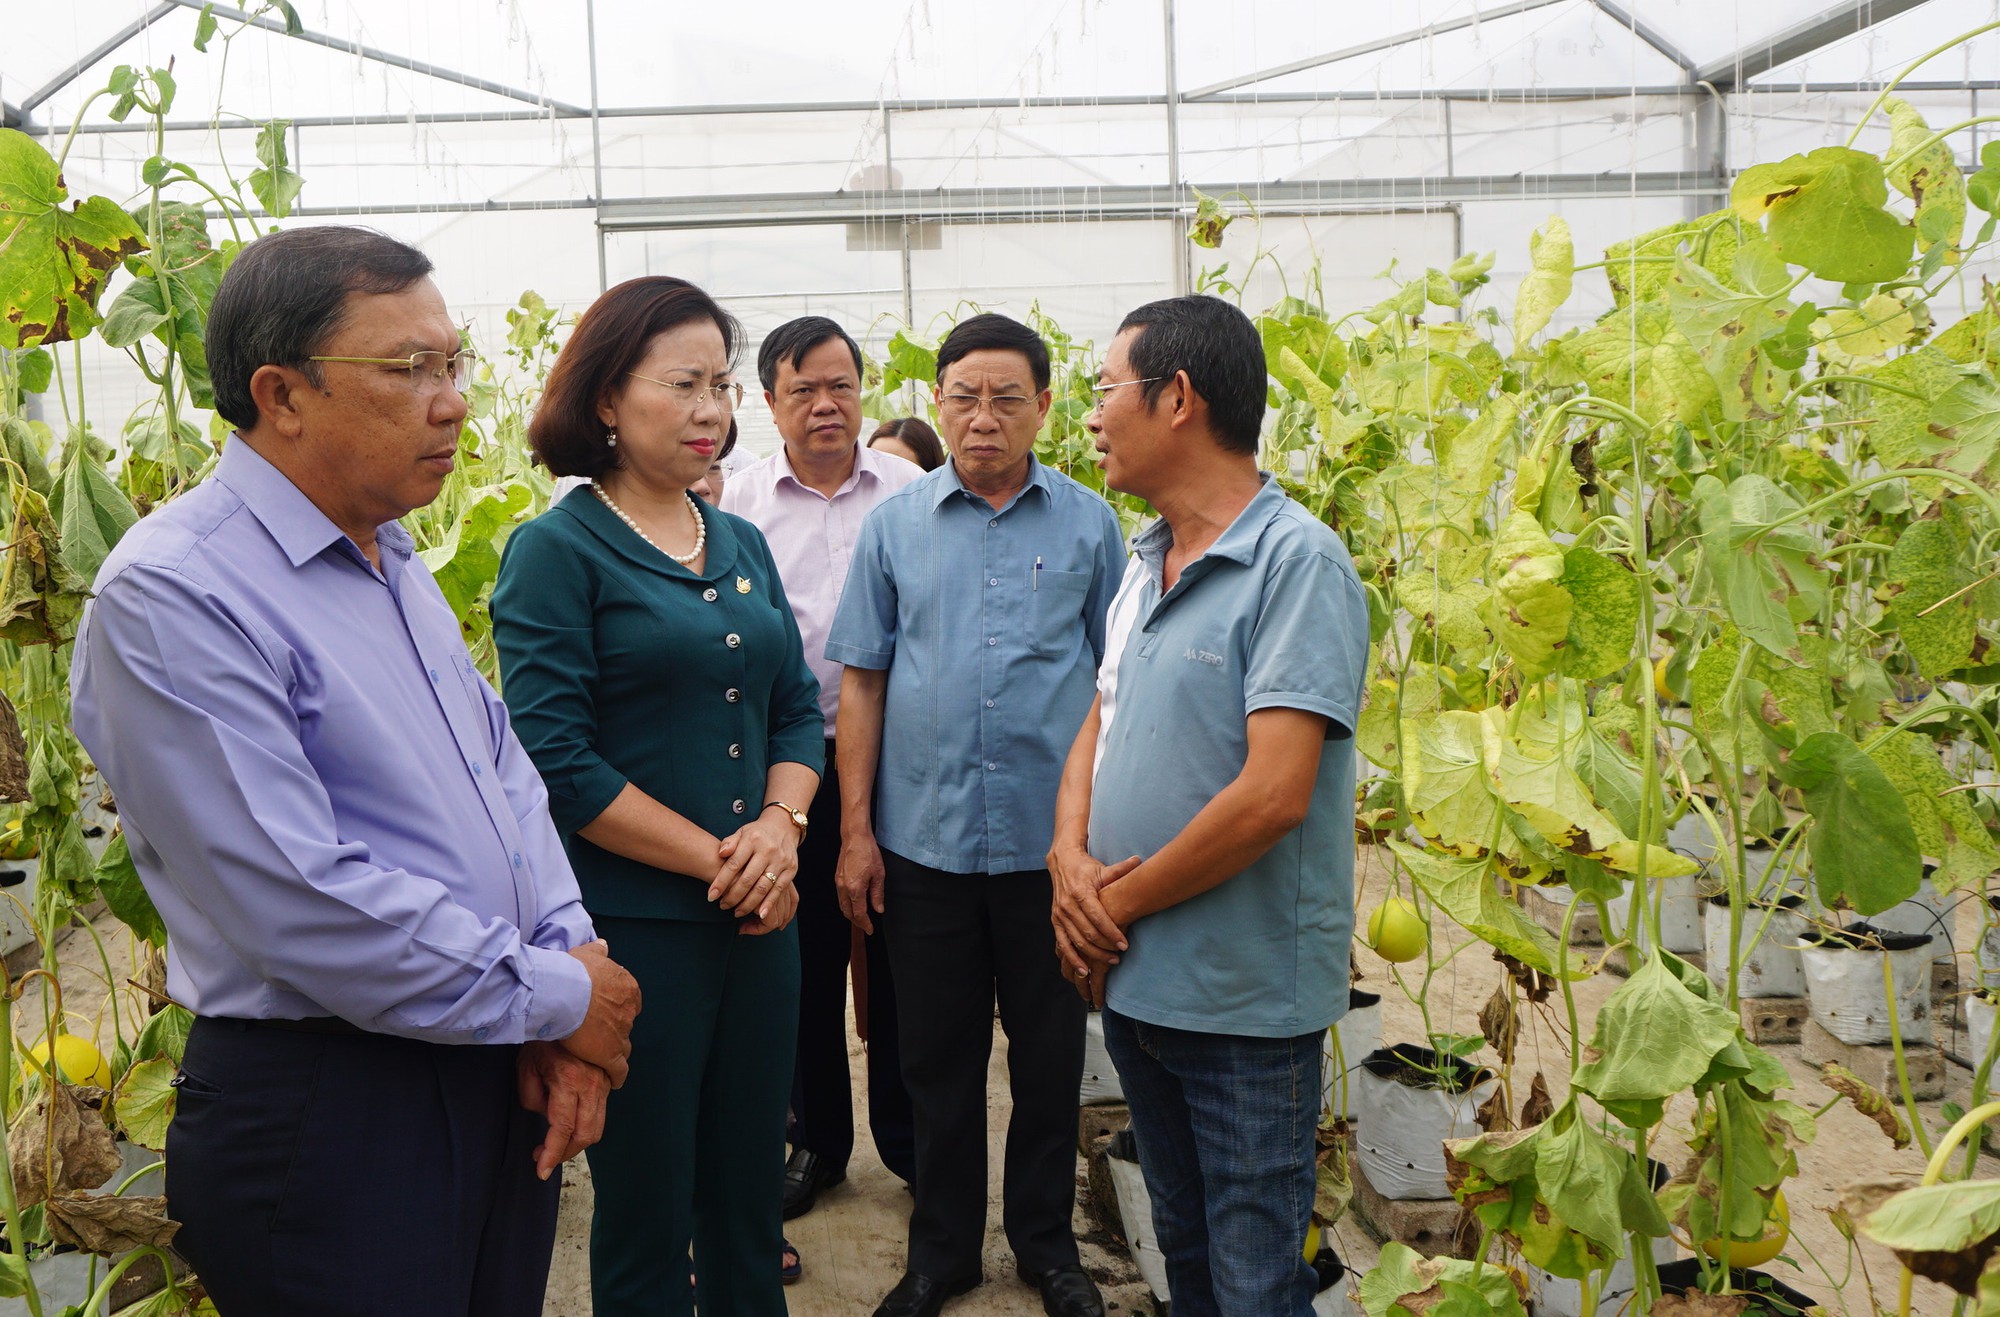 Nông dân Hà Nội thay đổi tư duy, trở thành những nông dân chuyên nghiệp, sản xuất theo tín hiệu thị trường - Ảnh 3.